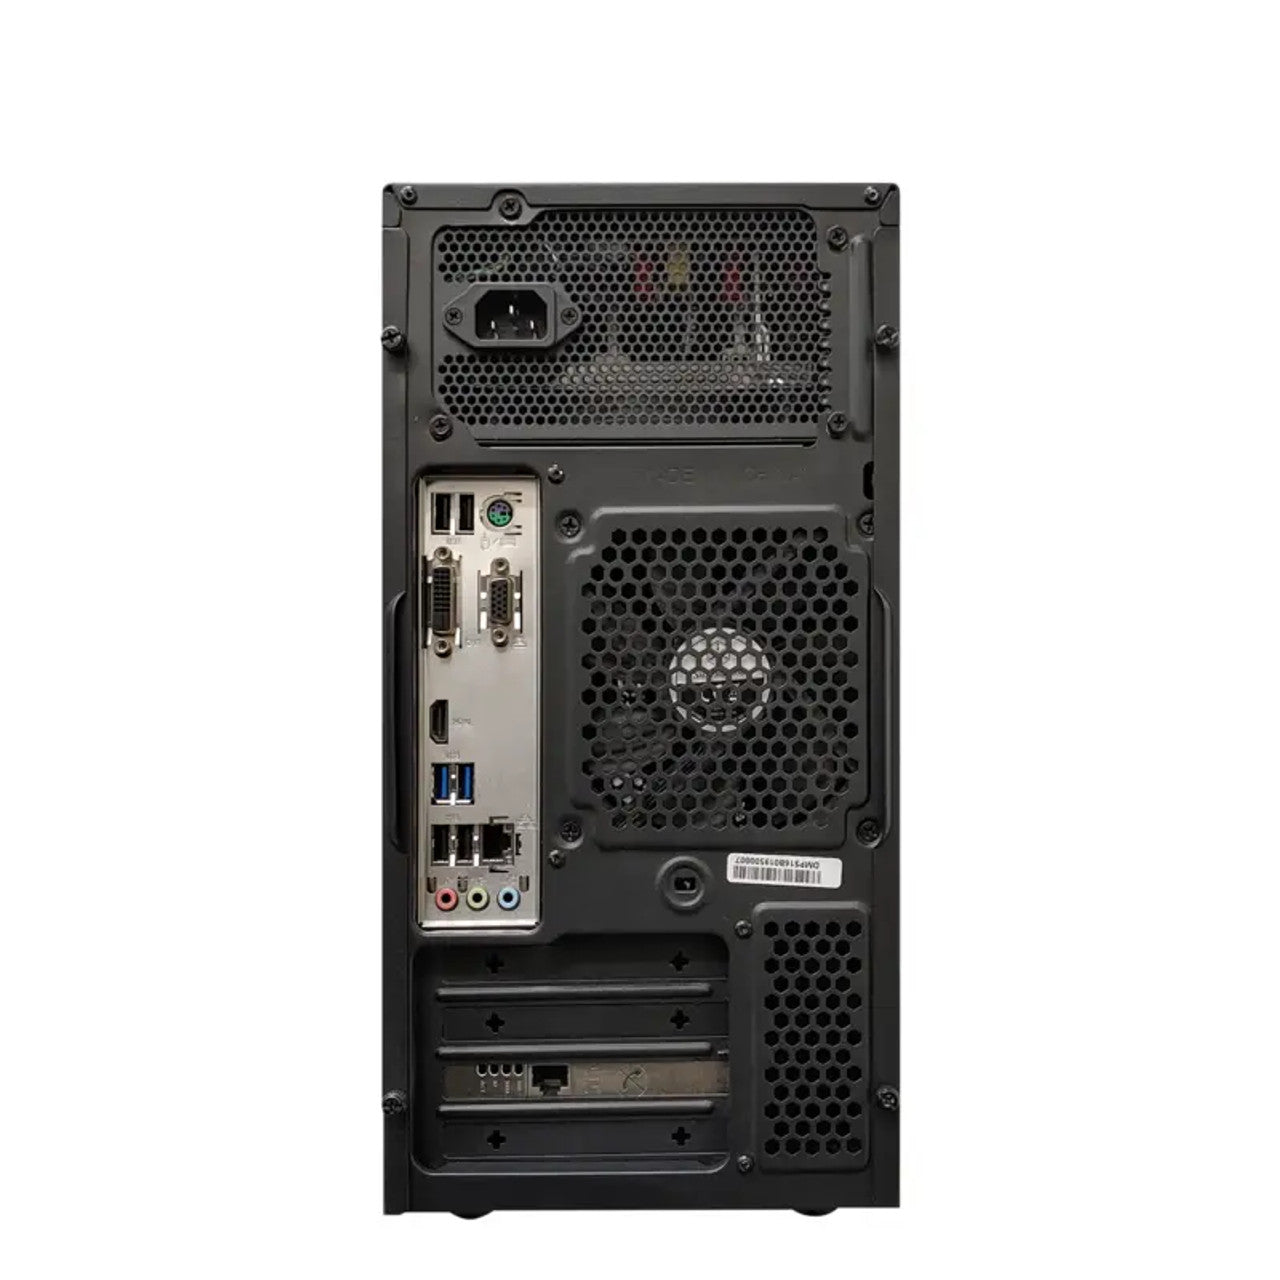 Digital Watchdog DW-BJMT5103T Blackjack Tower mid-size servers with Intel Core i5 processor, 3TB Storage